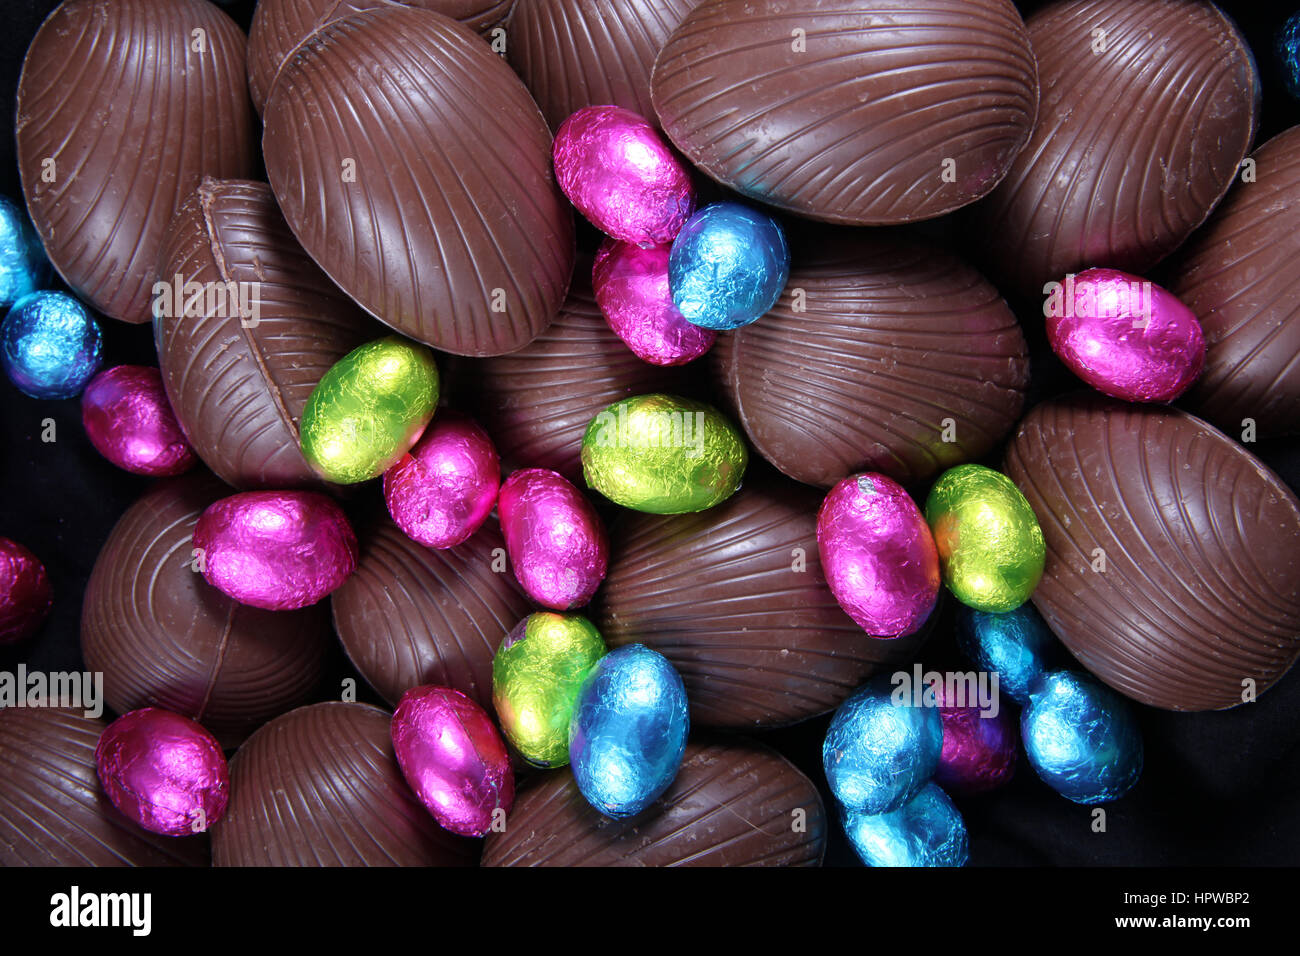 Haufen von Folie eingewickelt & ausgepackt Schokolade Ostereier in rosa, blau & lindgrün. Stockfoto